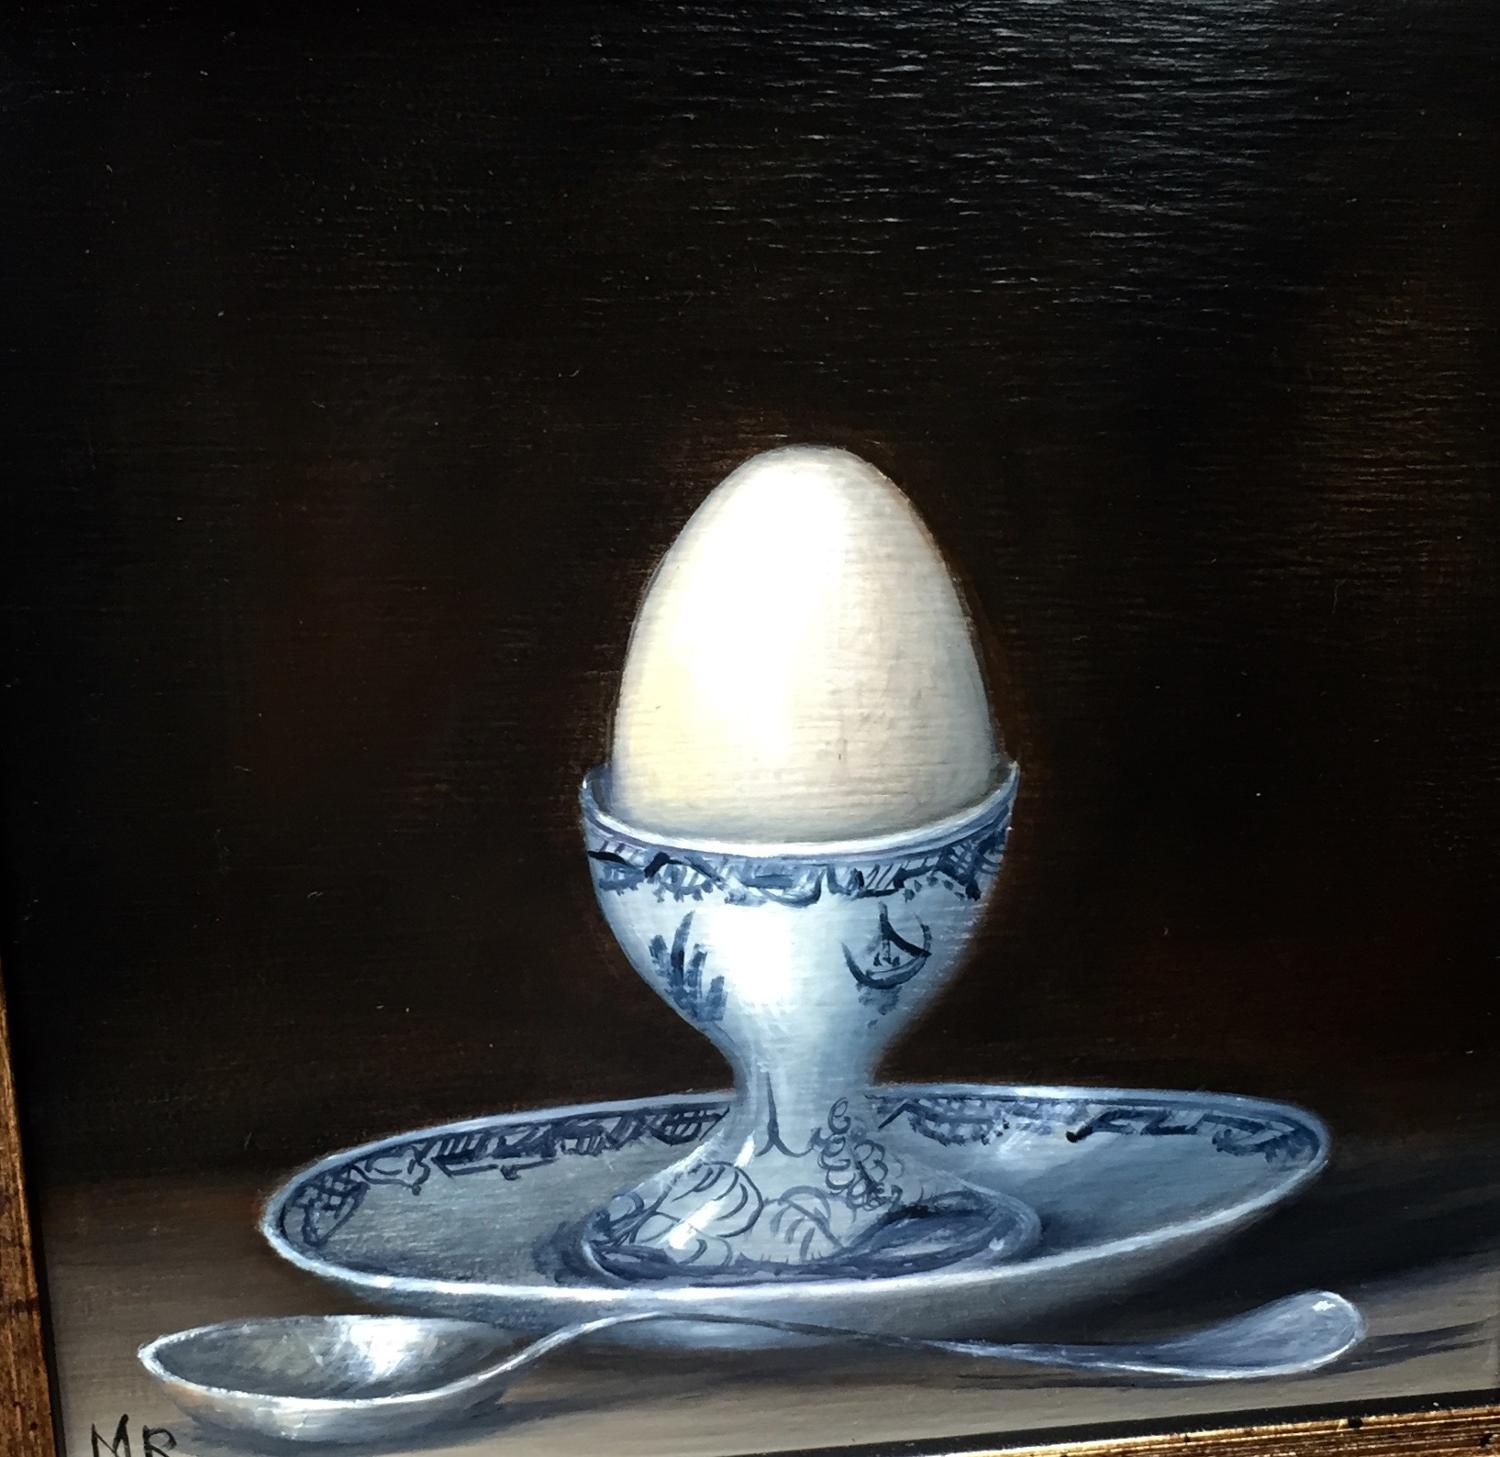 Boiled egg.